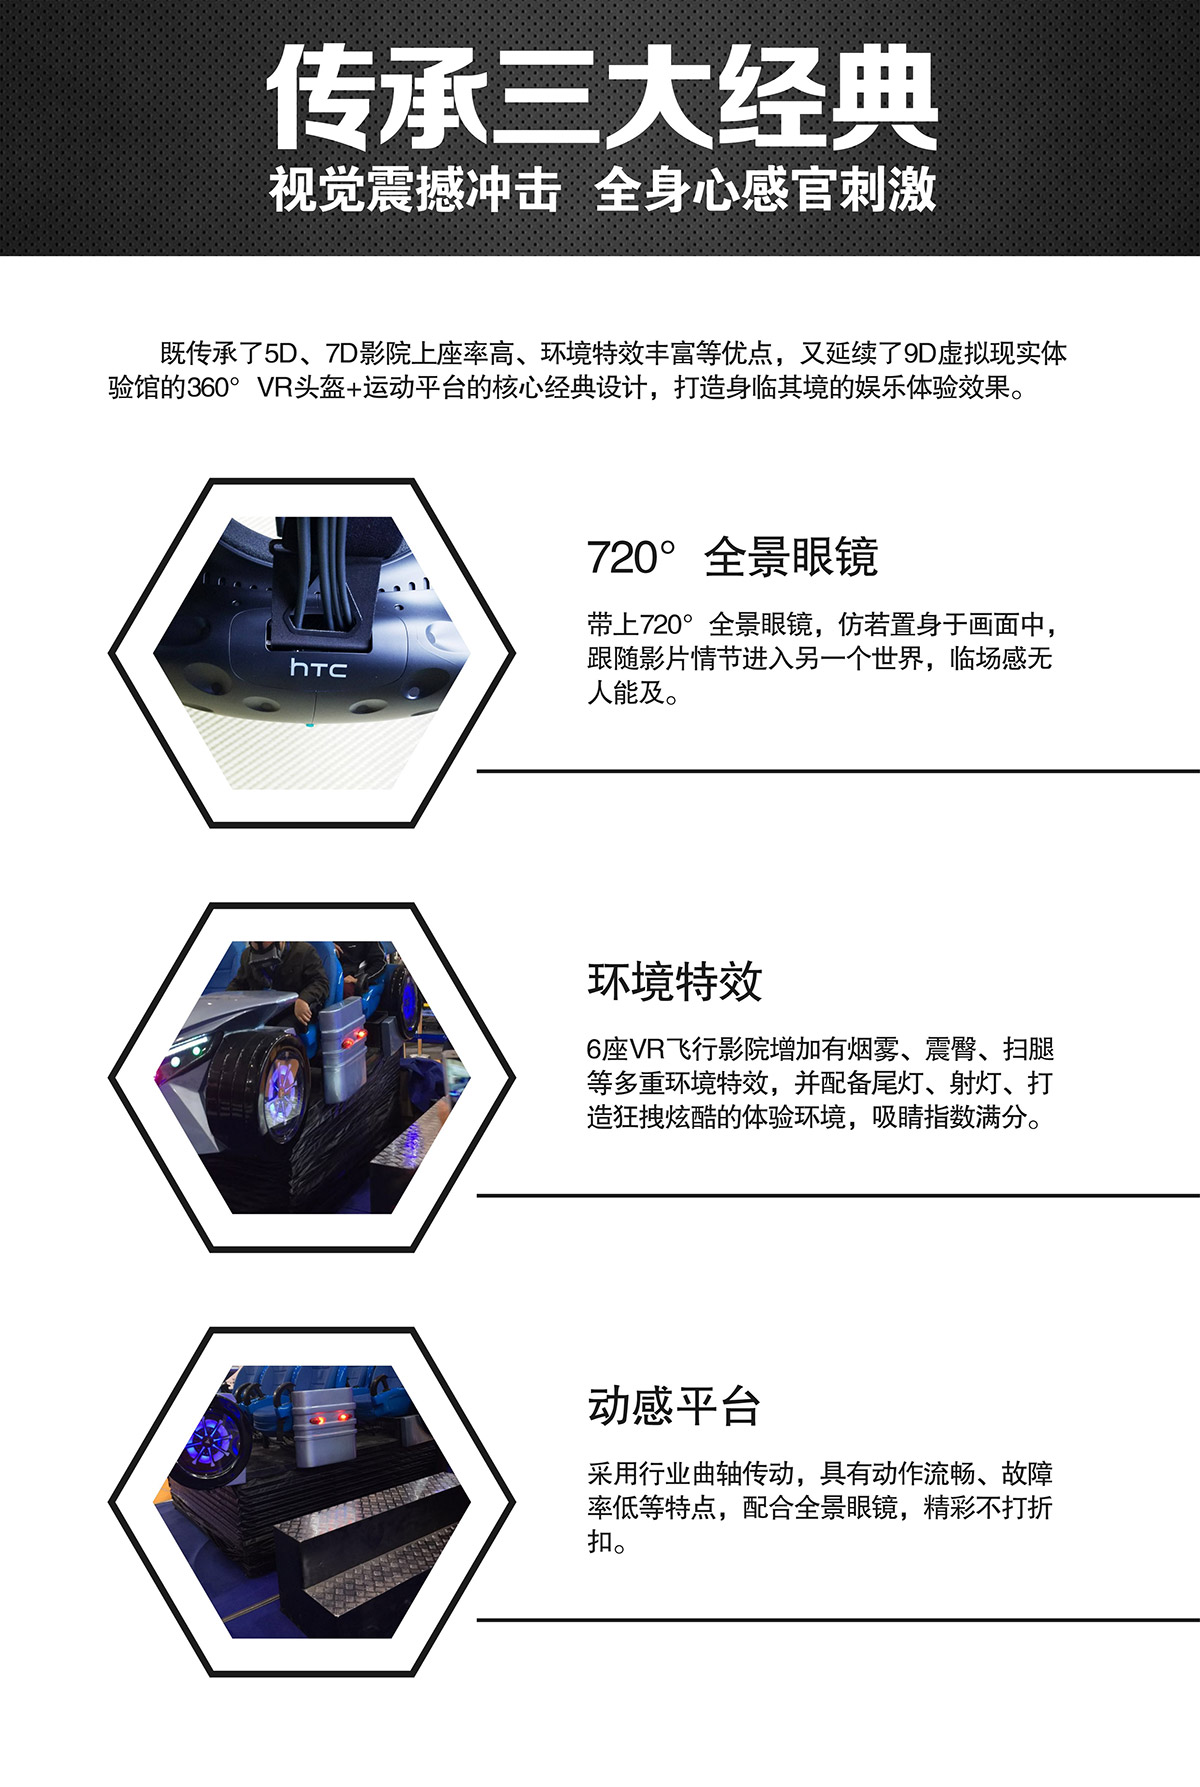 科普教育VR虚拟飞行体验馆视觉震撼冲击.jpg